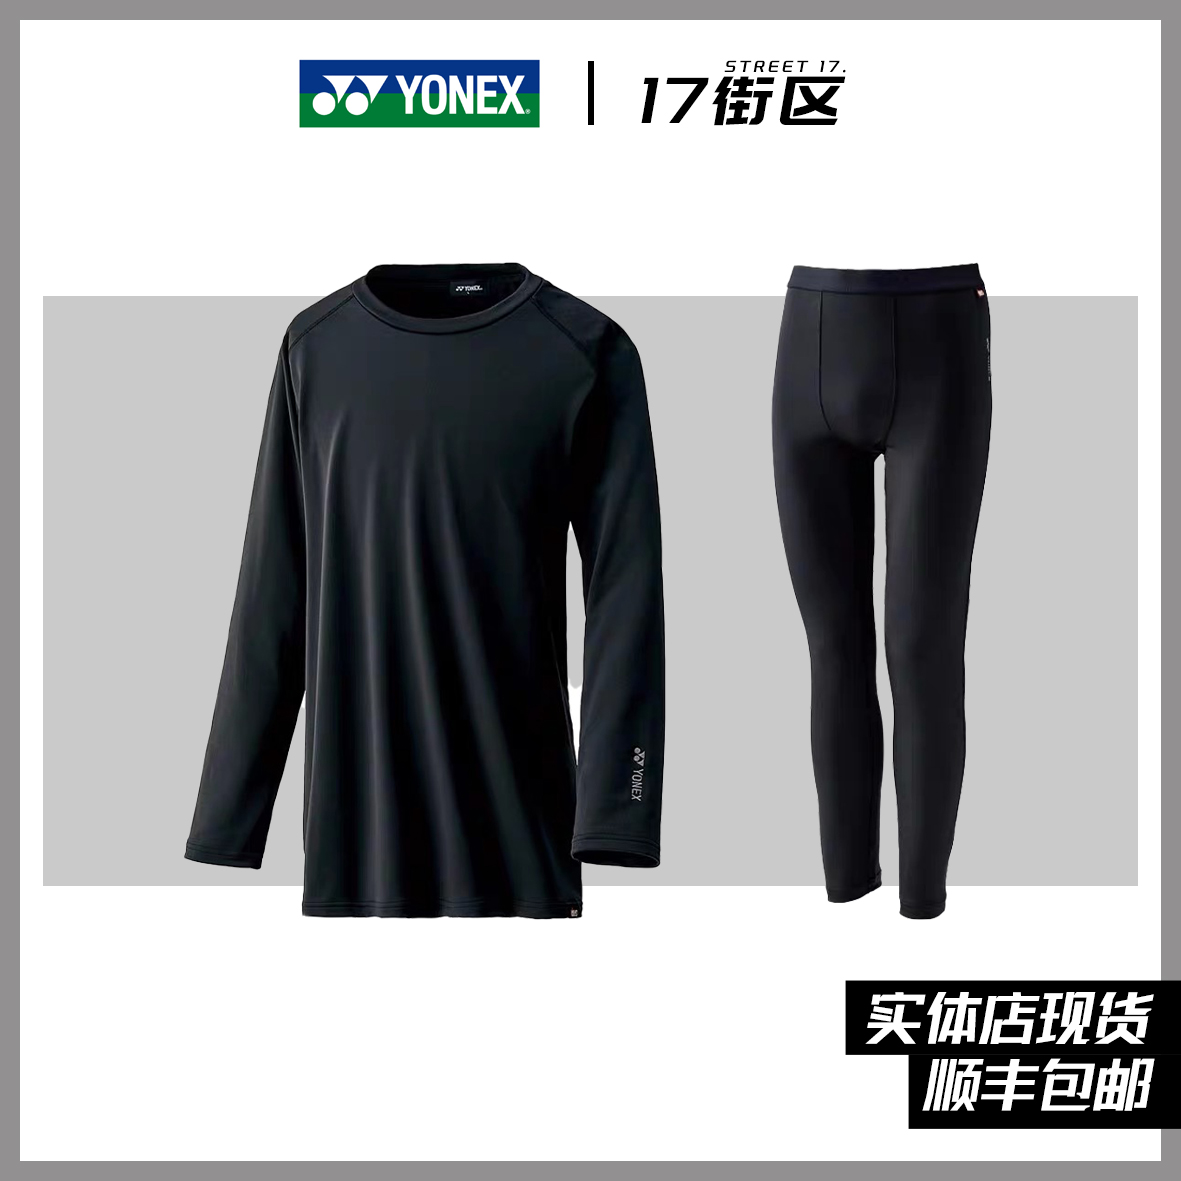 24新款YONEX尤尼克斯滑雪速干内衣套装 紧身男女休闲保暖透气绒衣